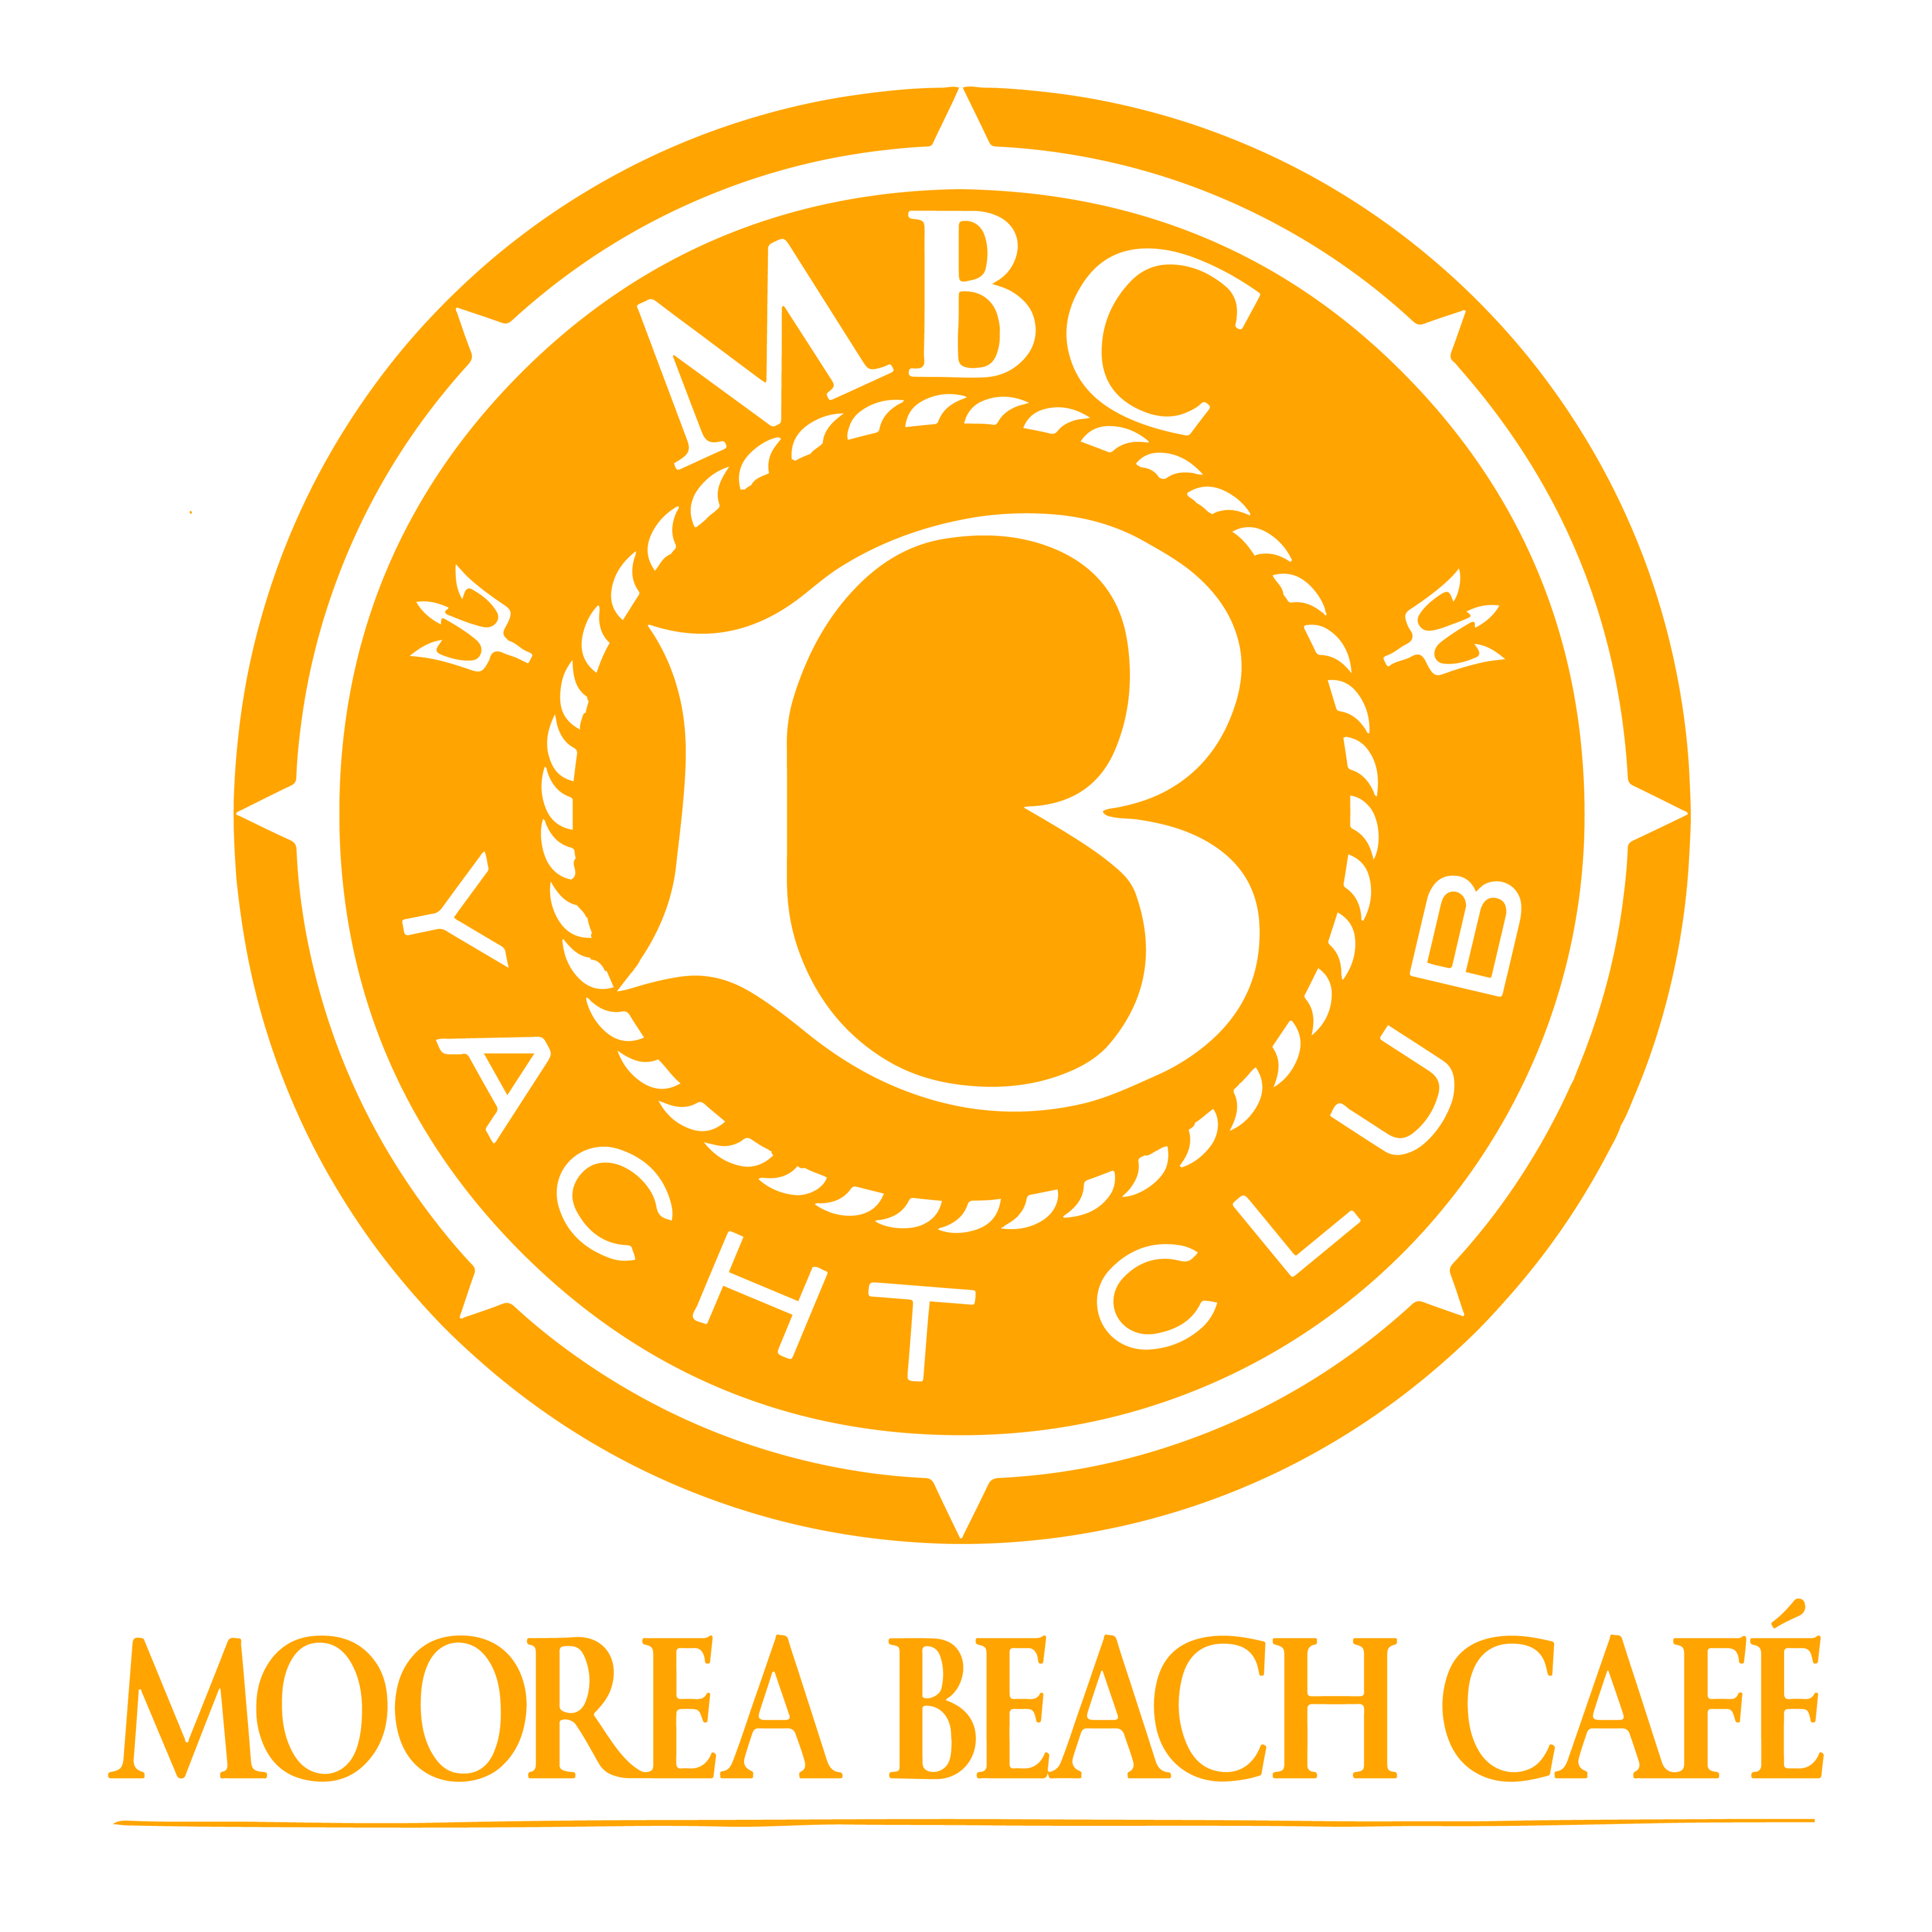 Moorea Beach Cafe logo